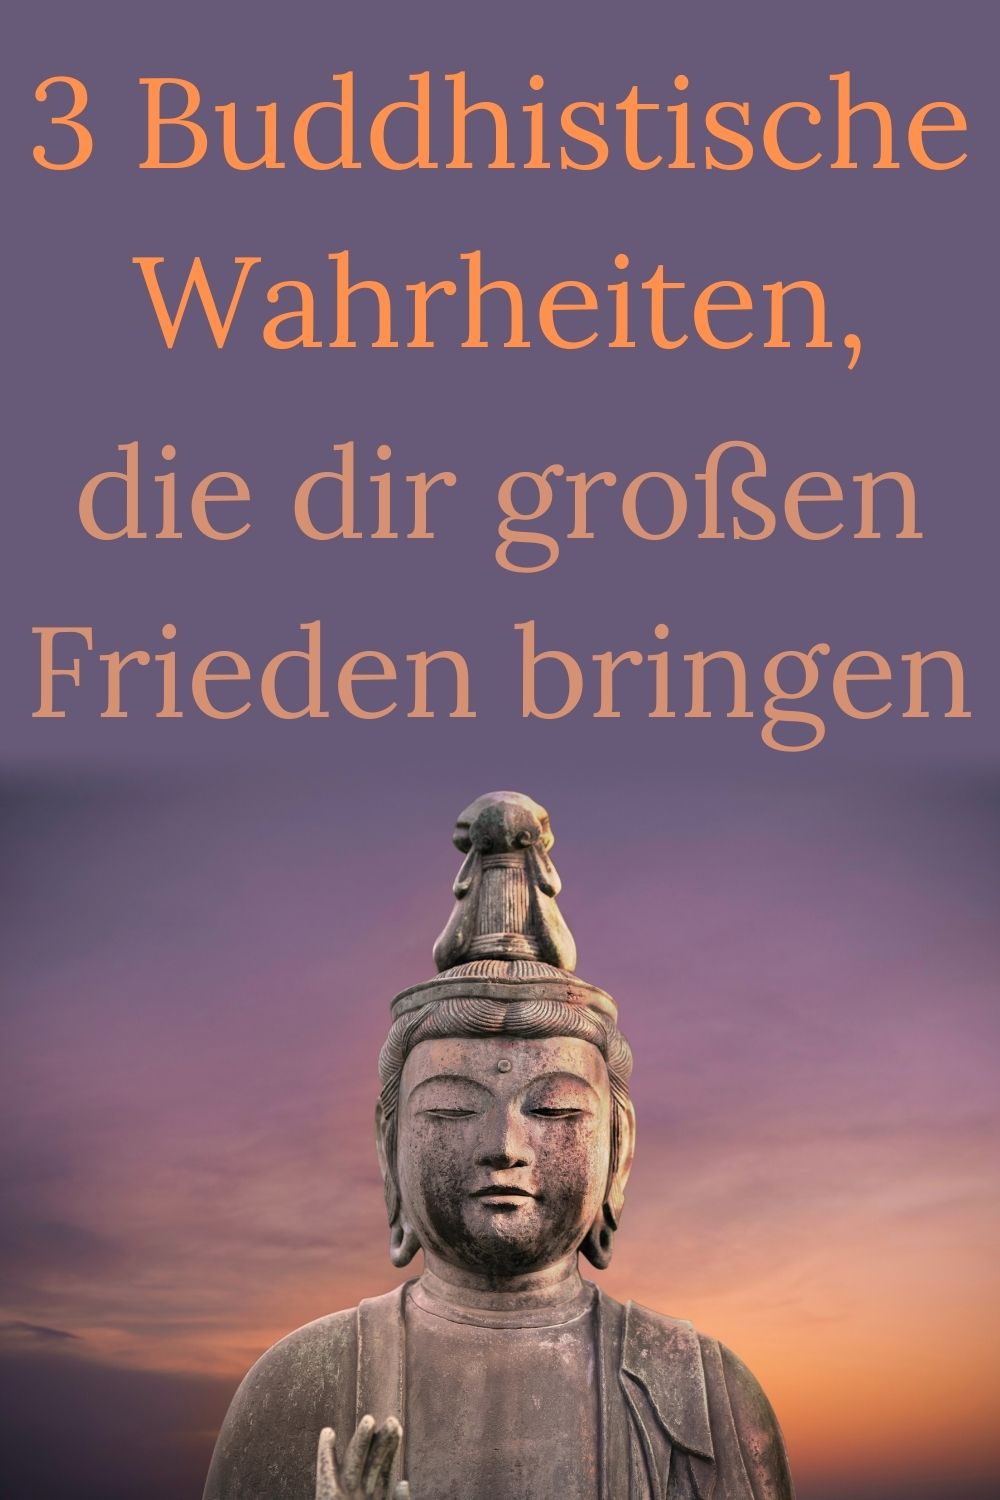 3-Buddhistische-Wahrheiten-die-dir-großen-Frieden-bringen